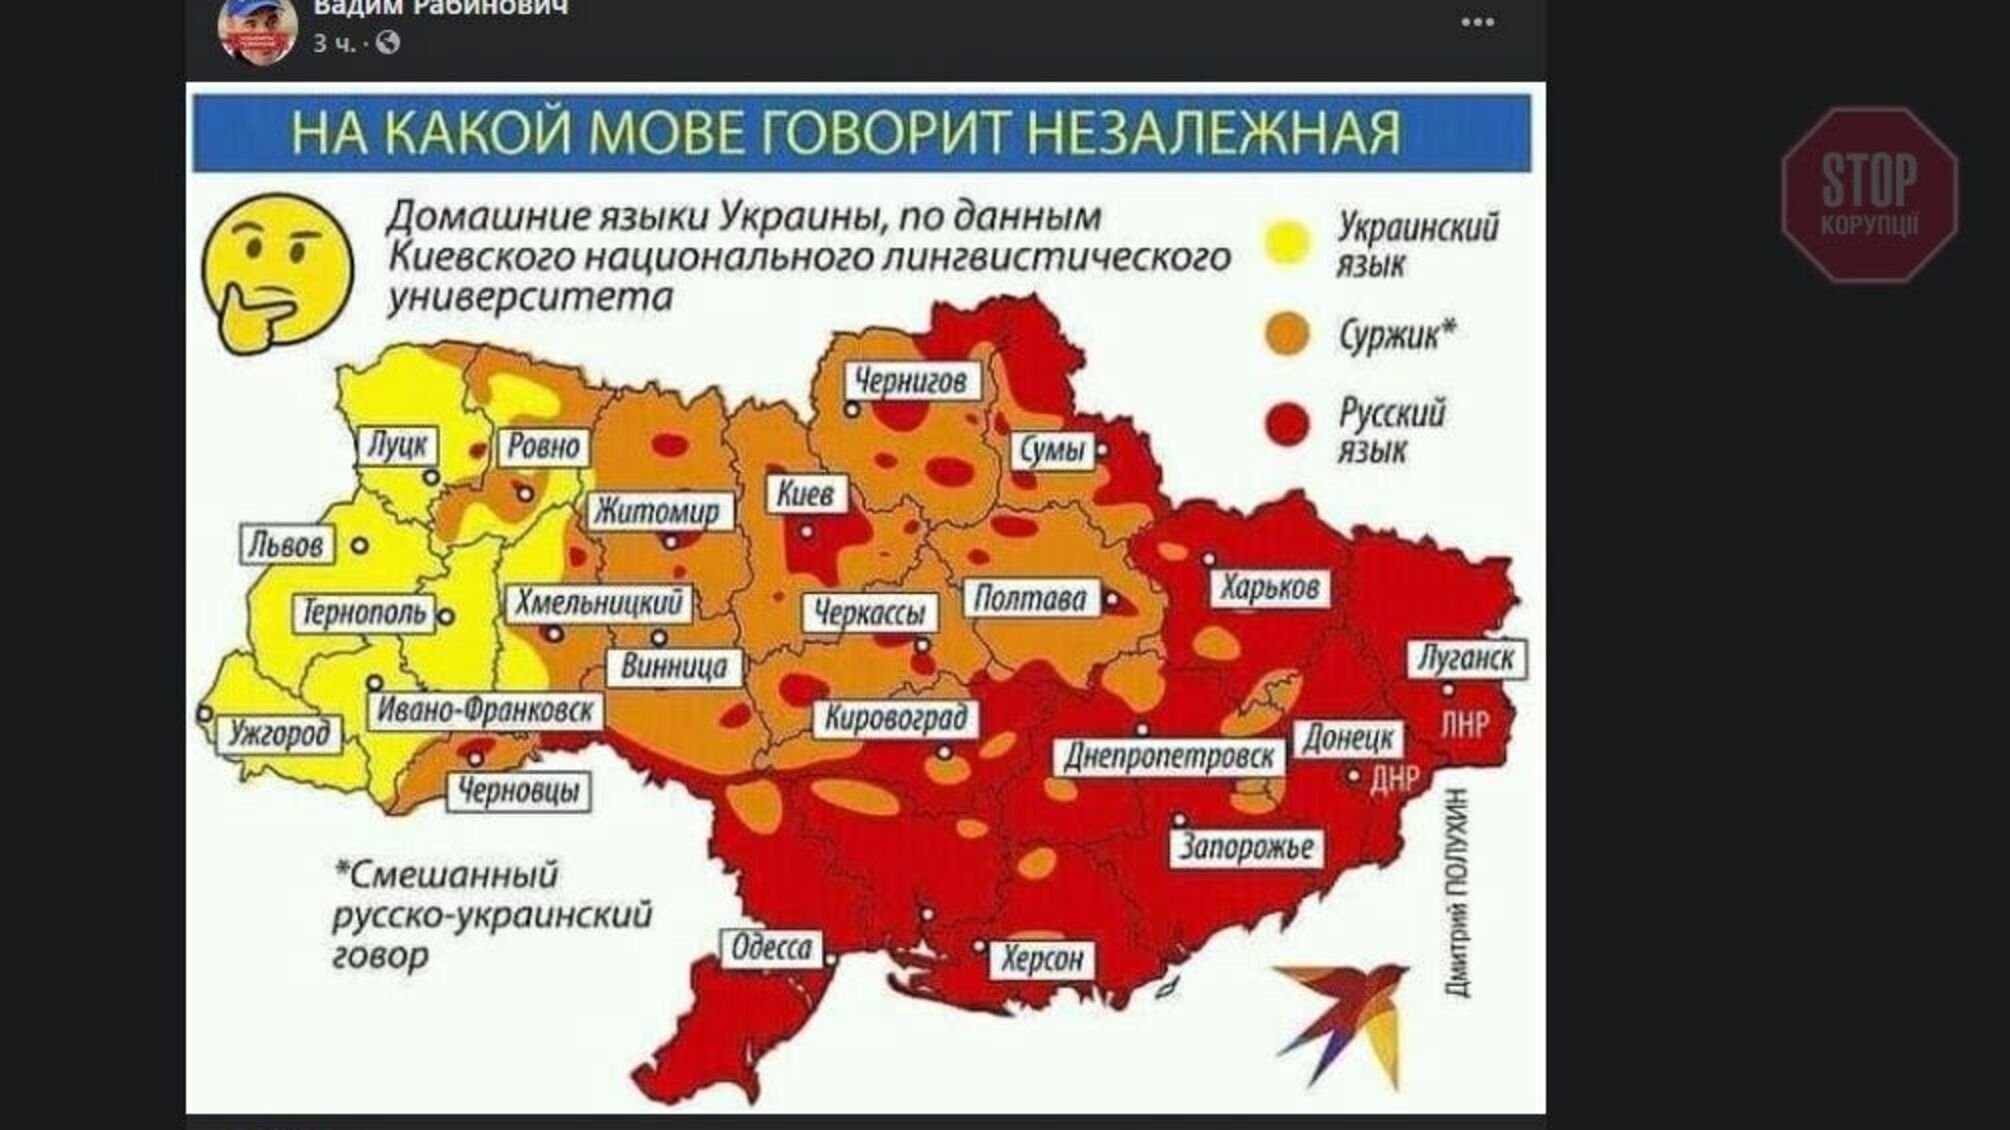 Нардеп Рабінович опублікував у соцмережі мапу України без Криму та з “ЛДНР”